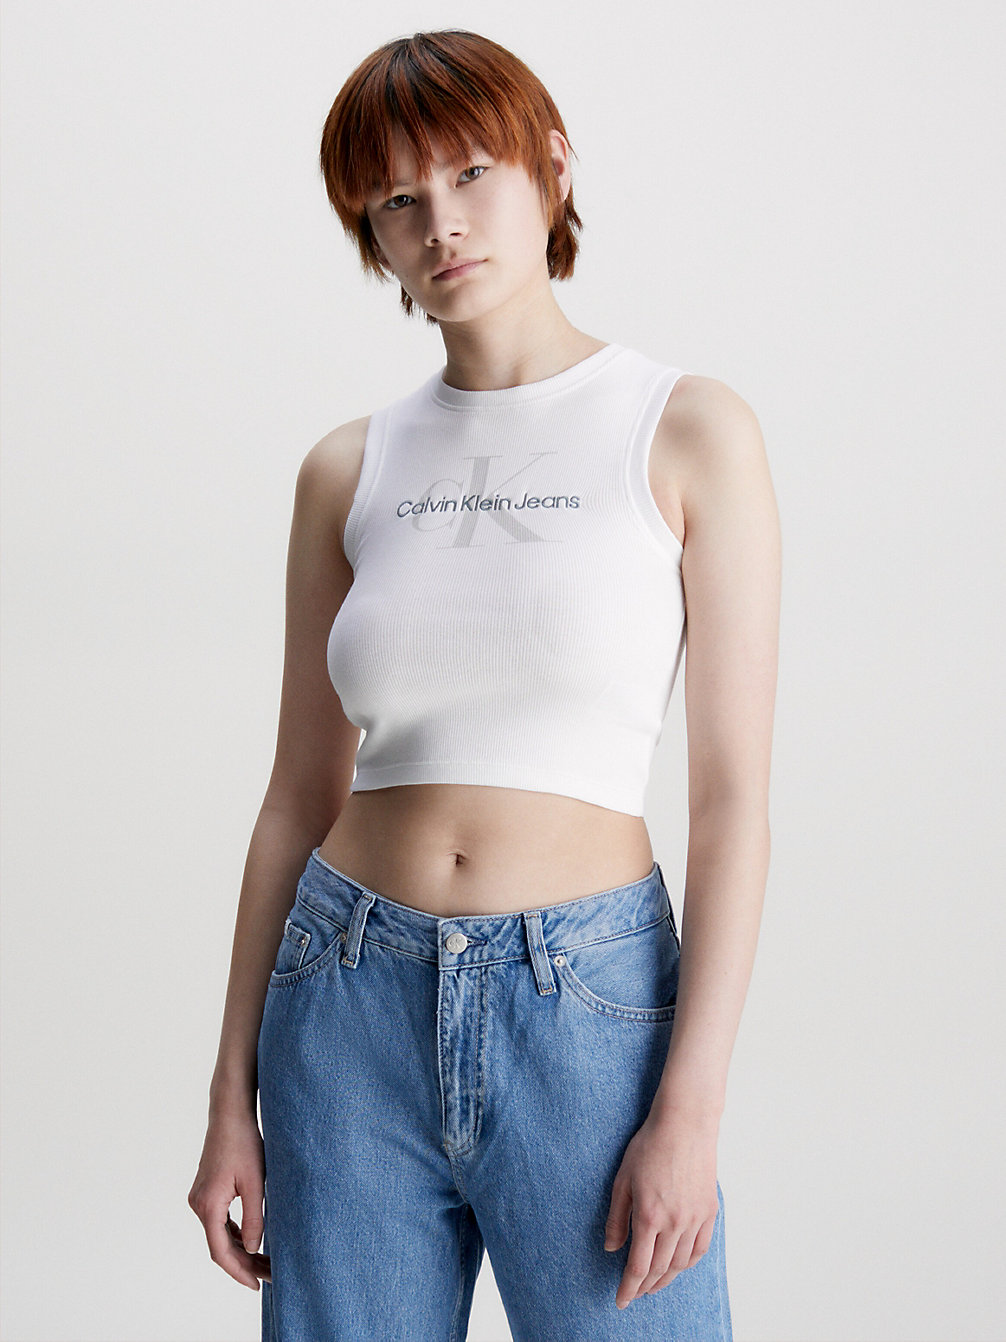 BRIGHT WHITE Cropped Monogramm-Tanktop undefined Damen Calvin Klein